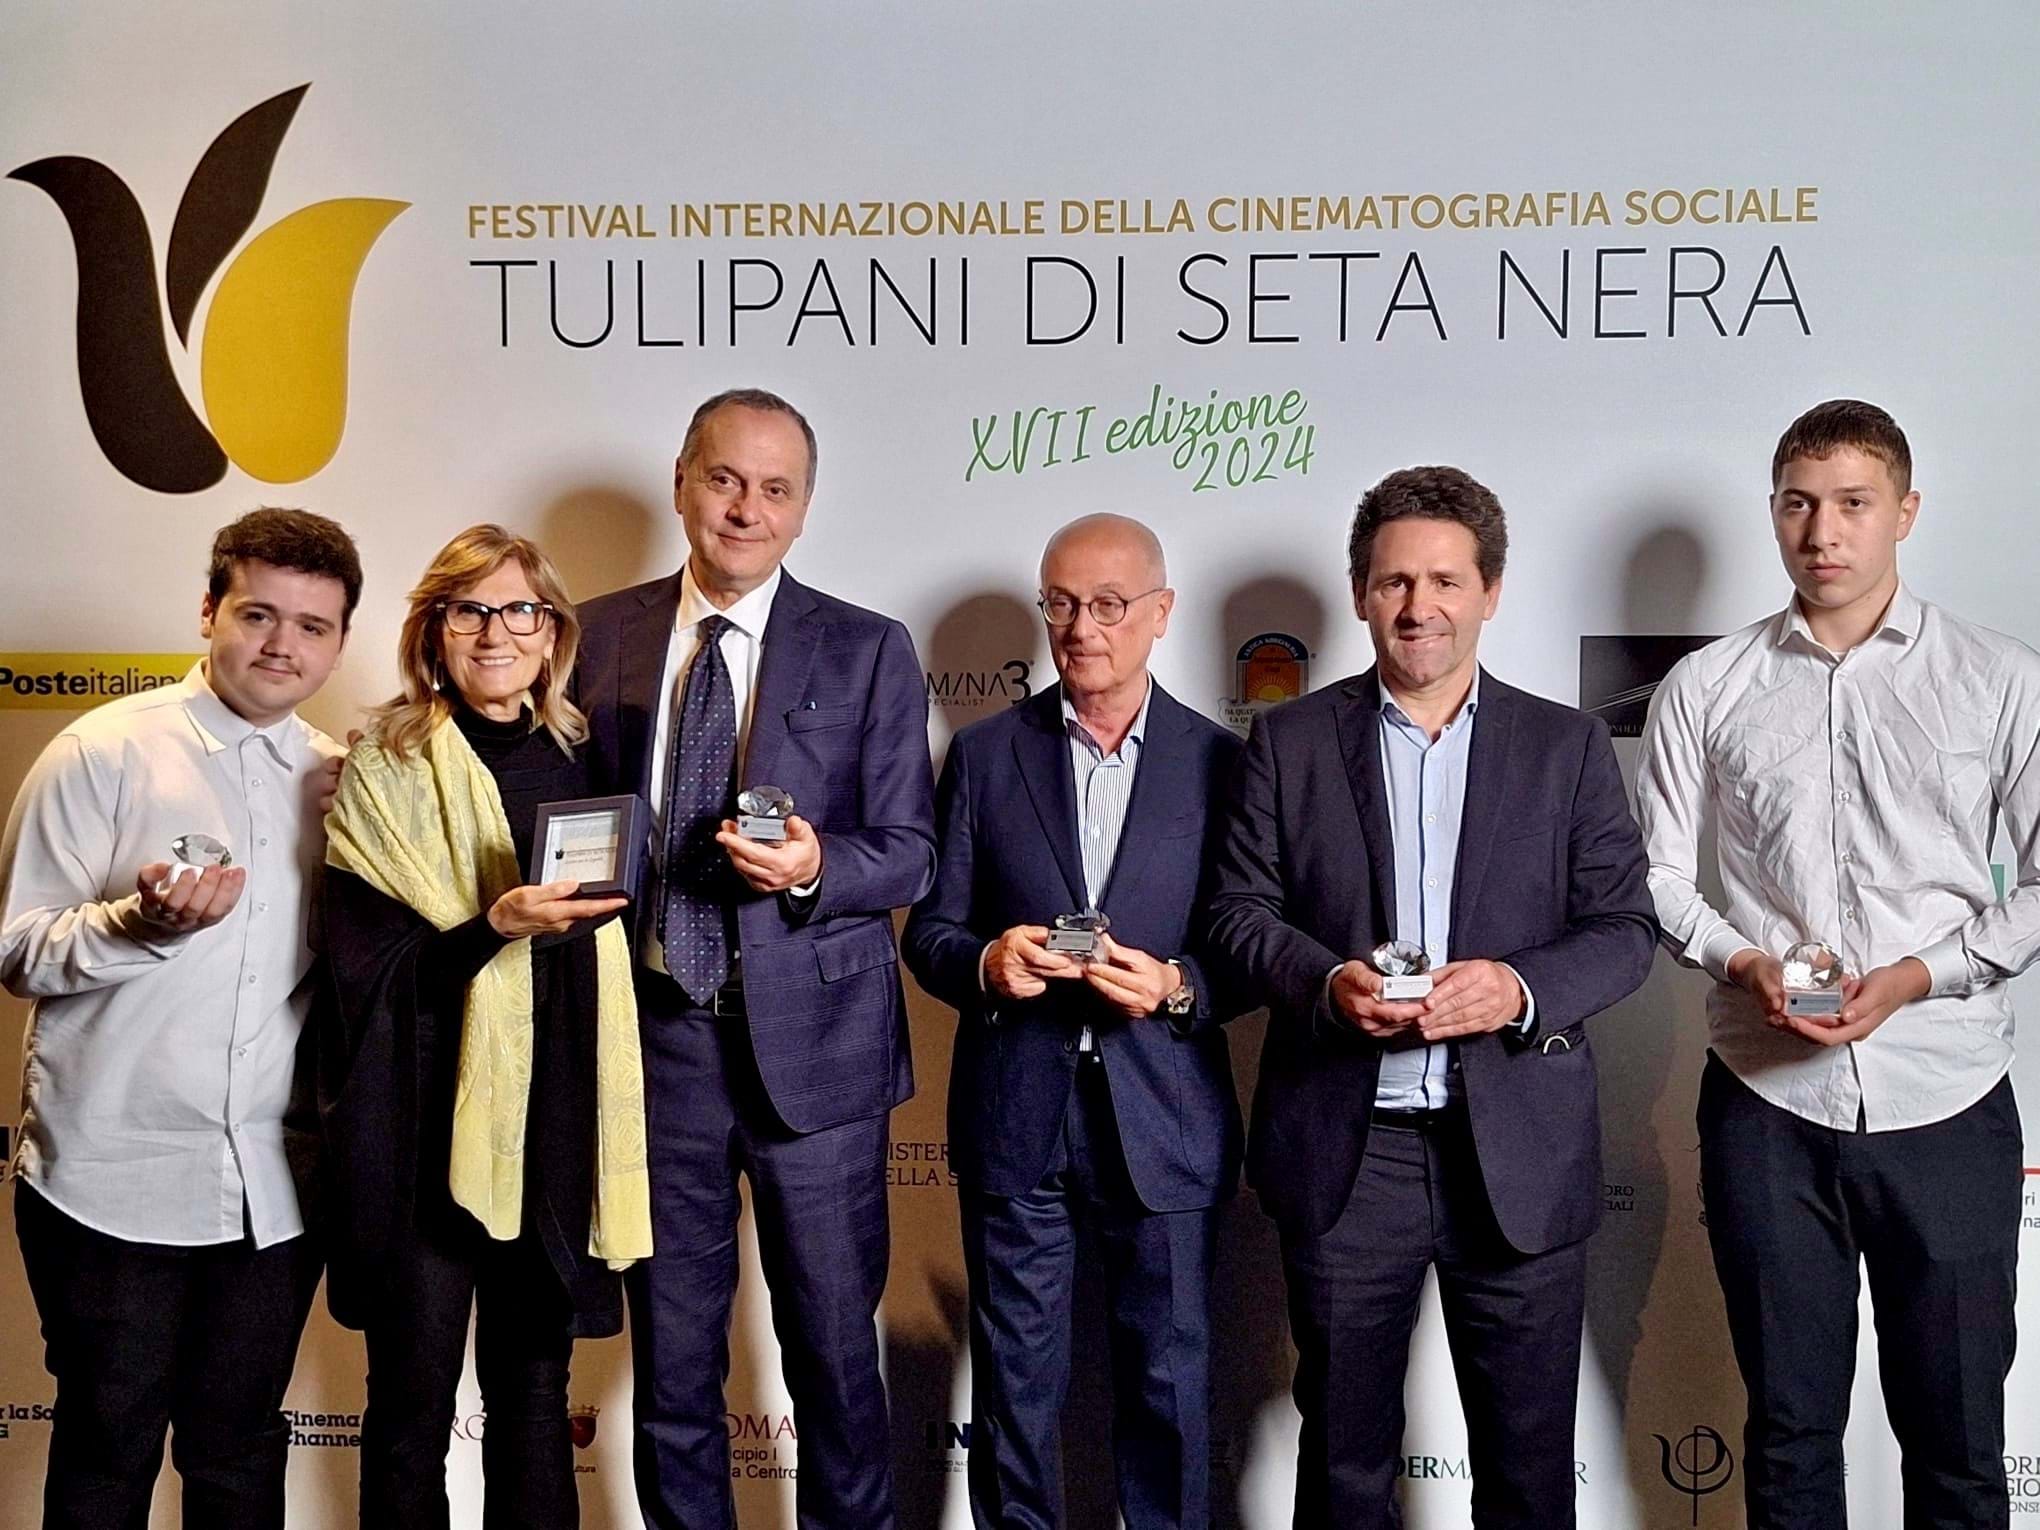 Progetto di alternanza scuola-lavoro con i ragazzi di Caivano: FIGC premiata al Festival 'Tulipani di Seta Nera'